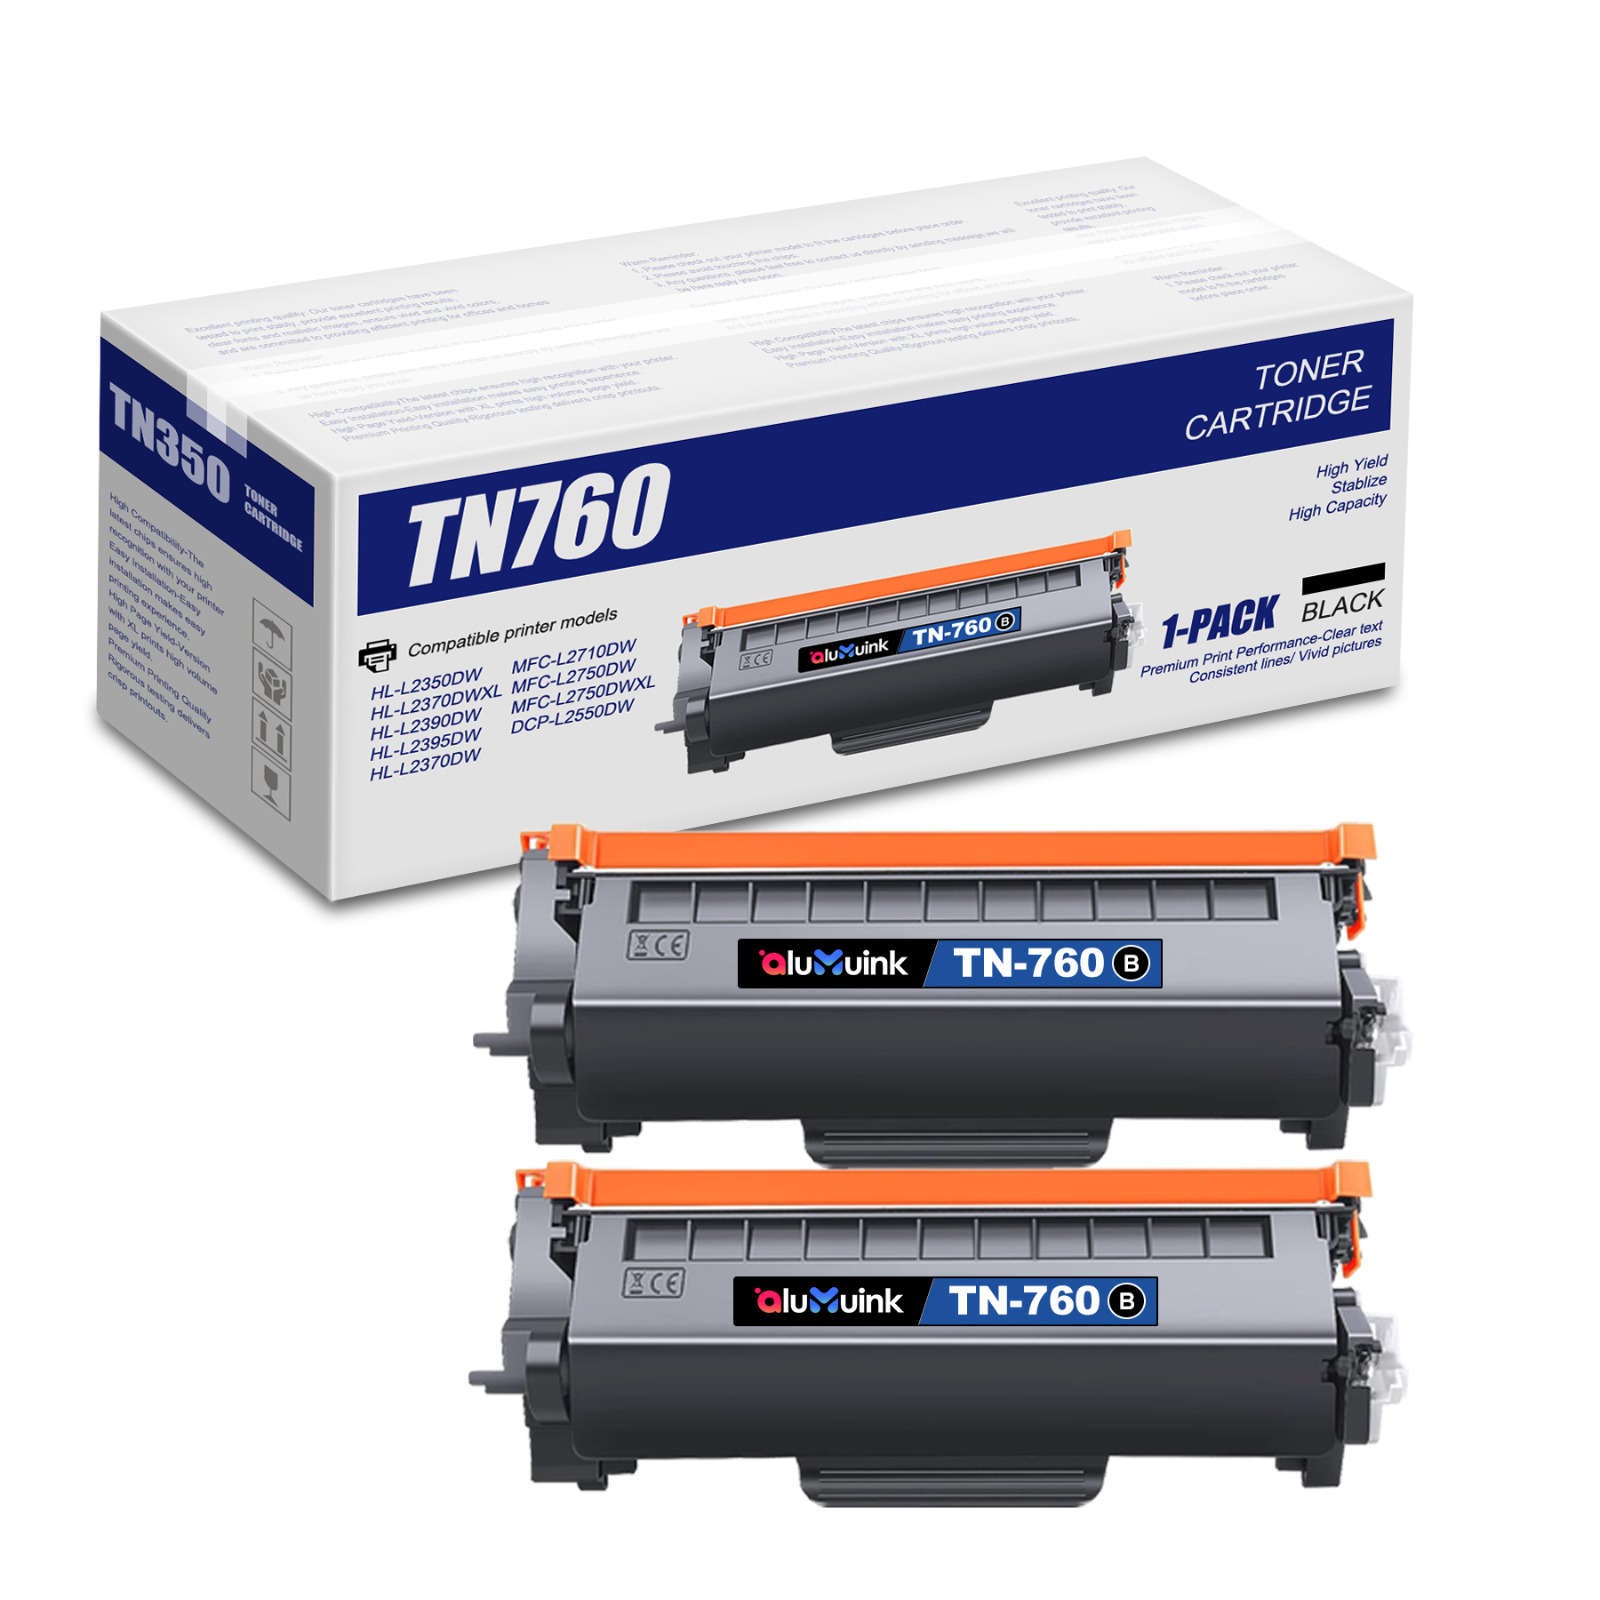 2PK TN-760 TN760 For Brother Toner Cartridge MFC-L2690DW DCP-L2550DW HL-L2350DW